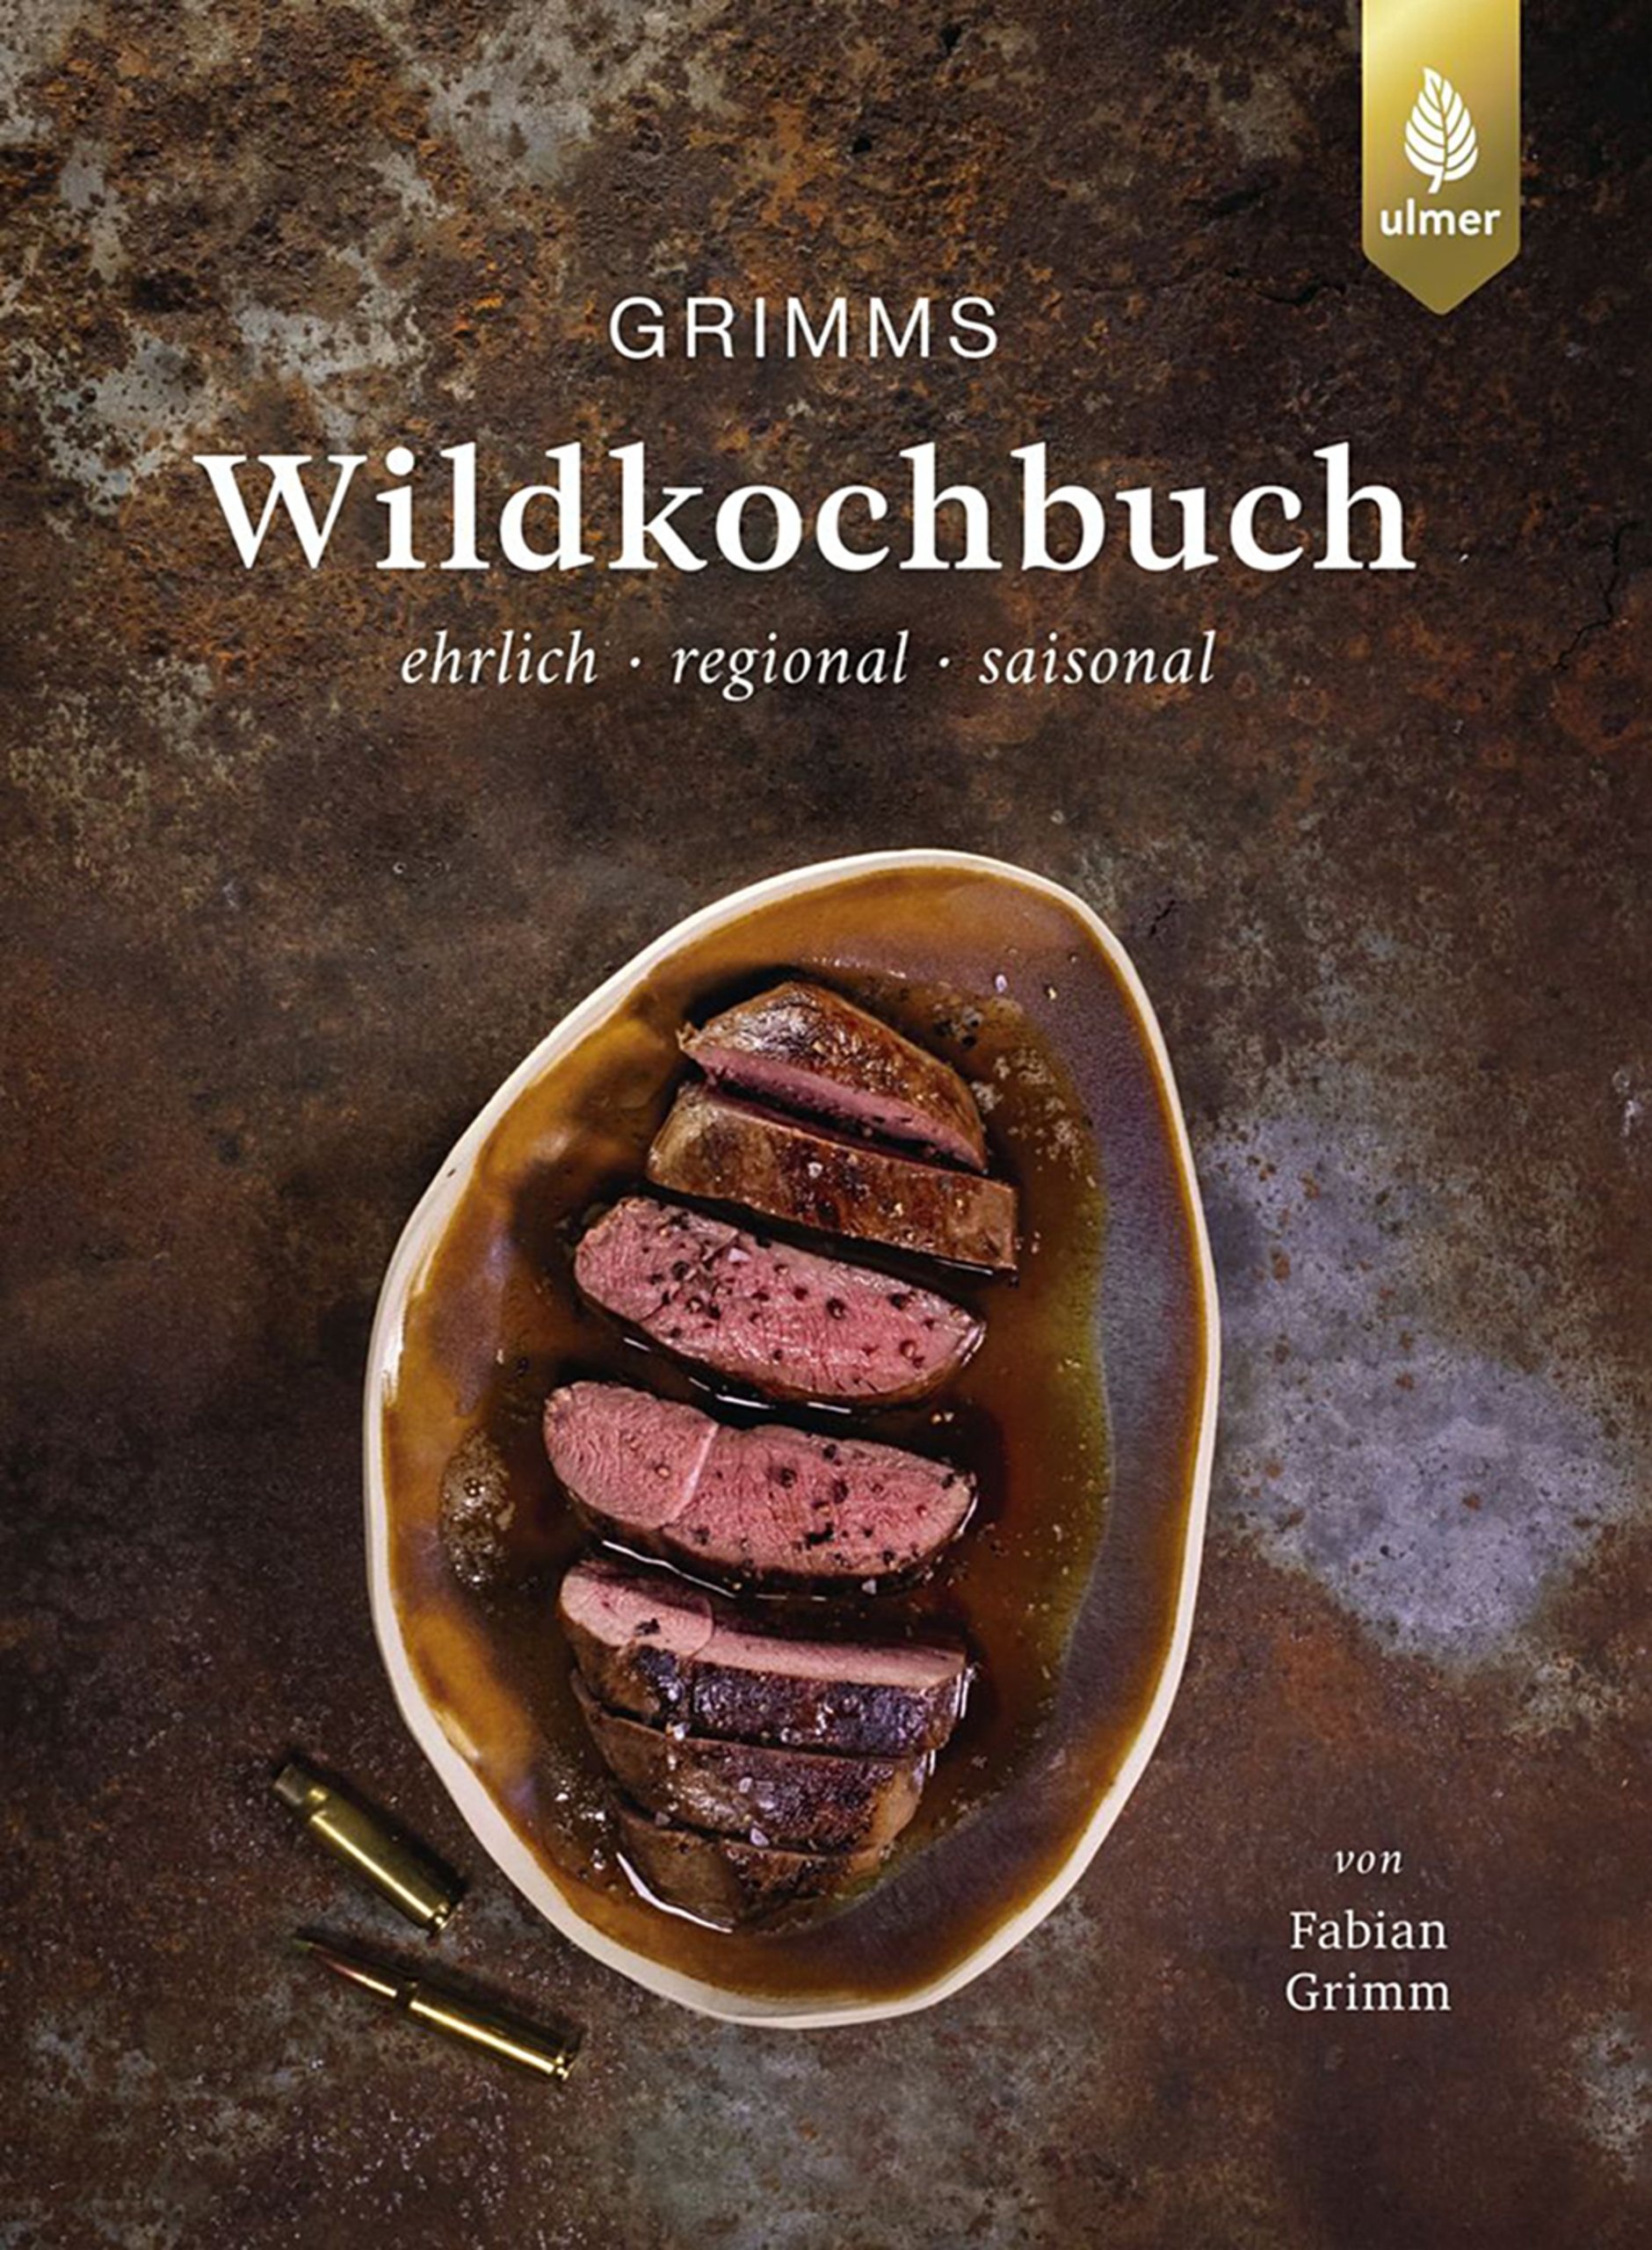 Grimms Wildkochbuch - ehrlich, regional, saisonal